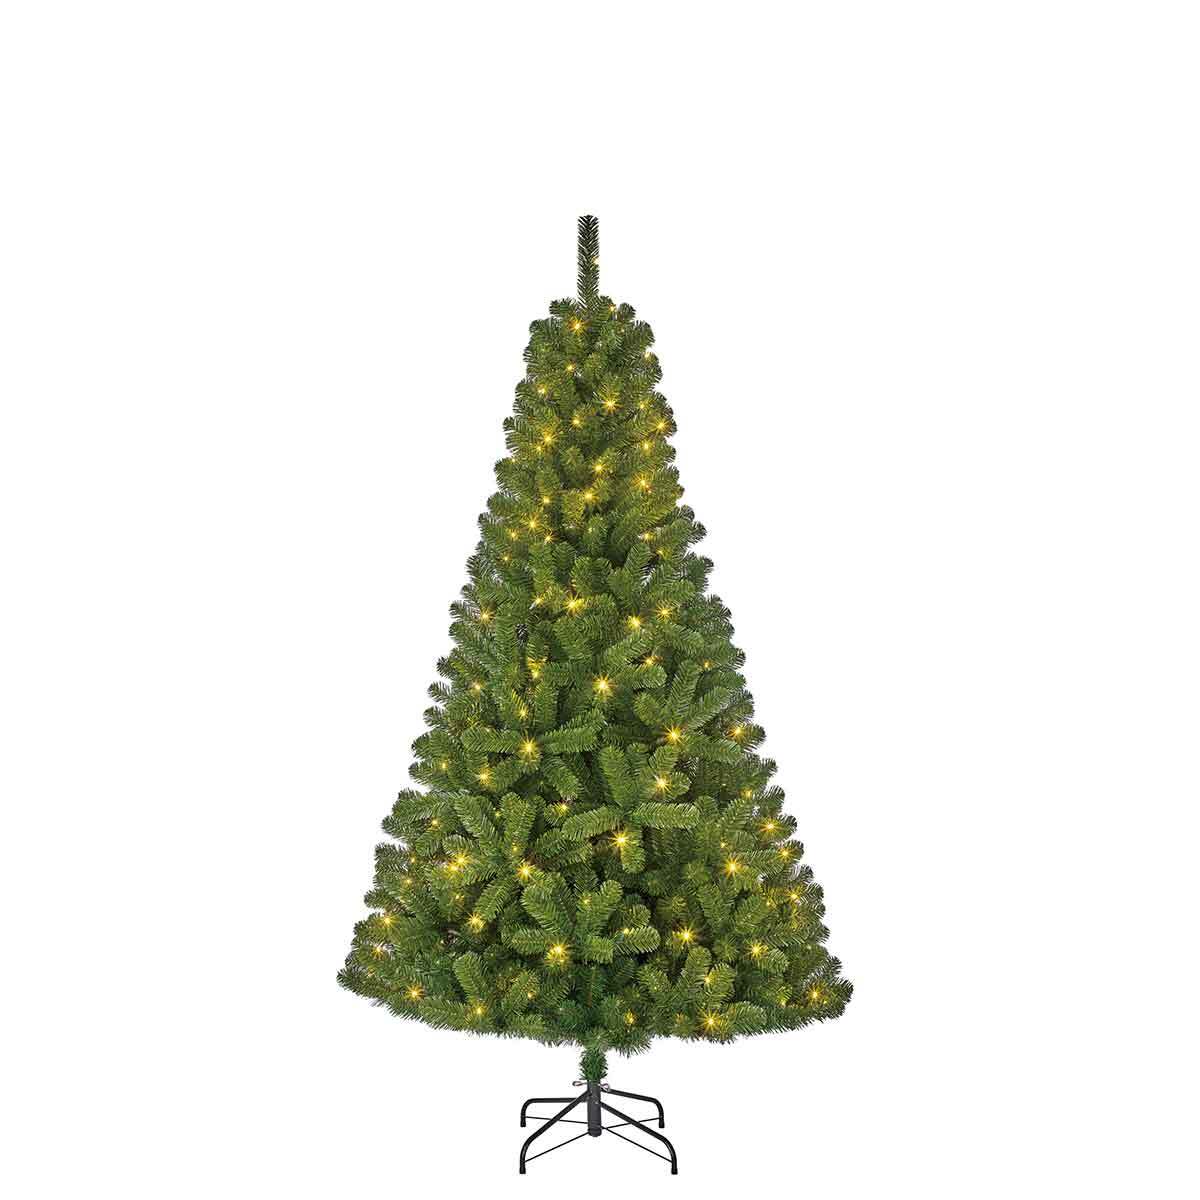 Blackbox Charlton kerstboom met 140 warmwitte led lampjes maat in cm: 185 x 115